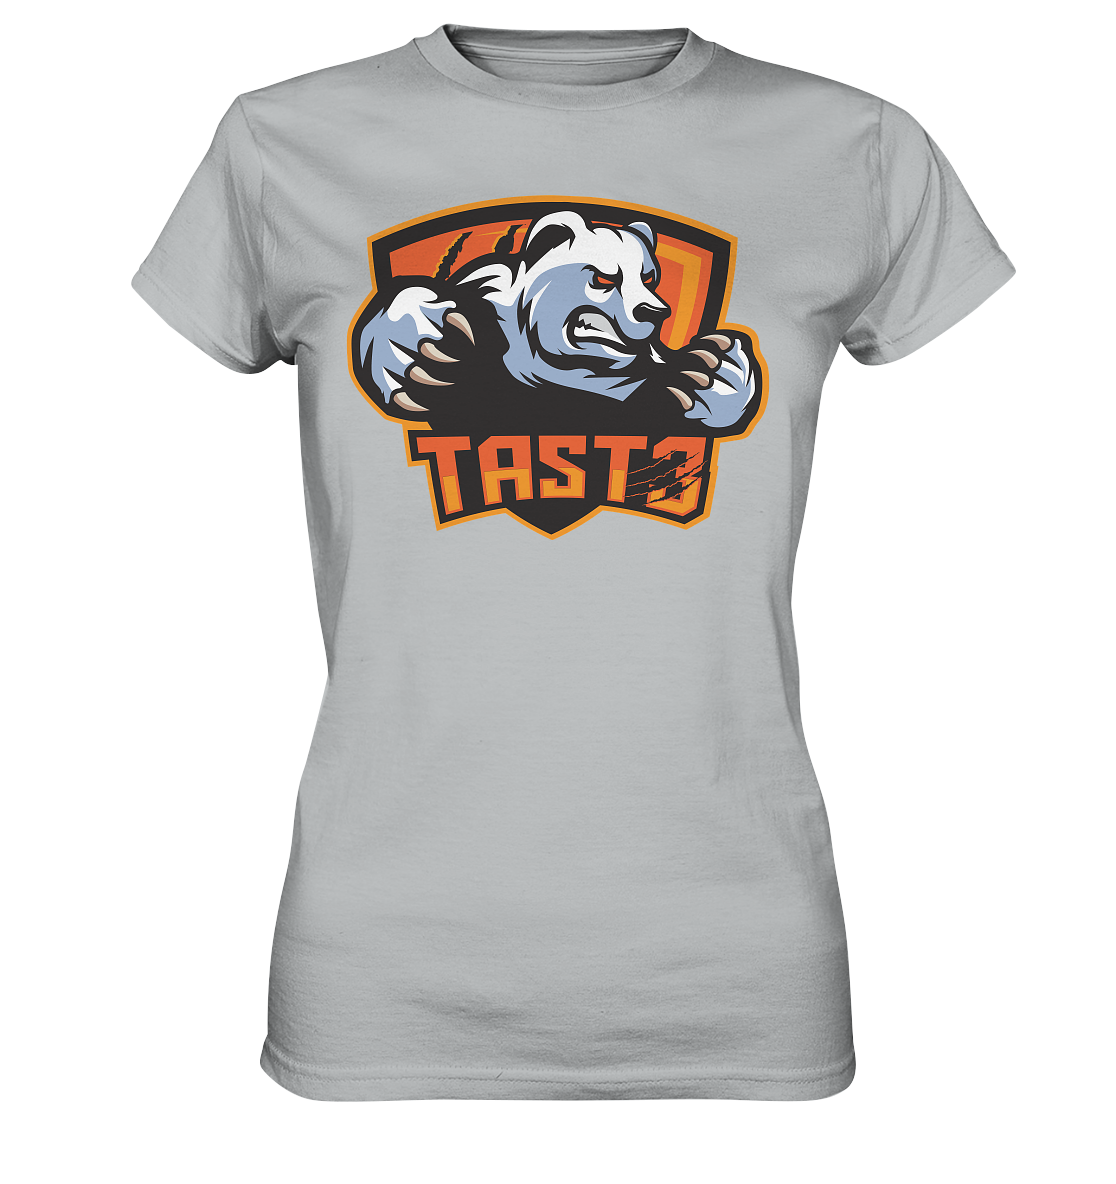 TAST3 ESPORTS - Ladies Basic Shirt